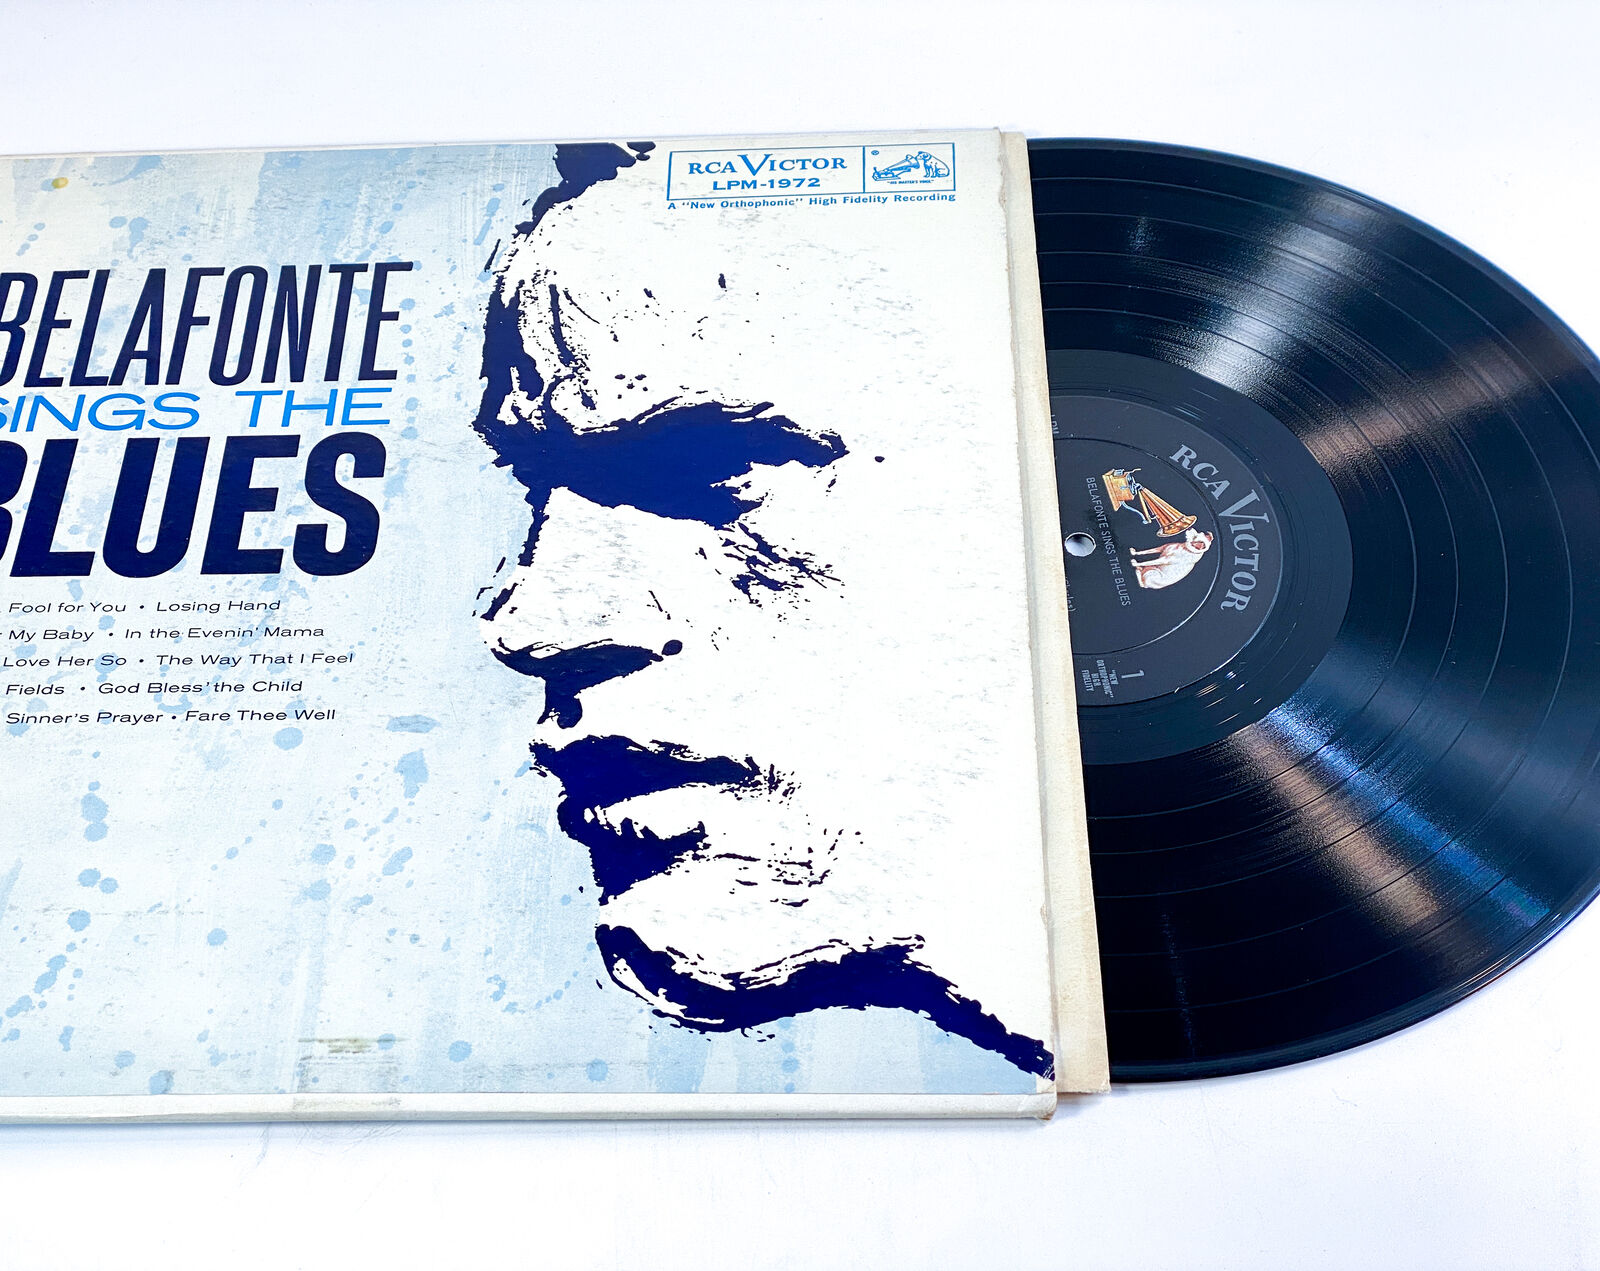 Harry Belafonte Belafonte Sings The Blues - VG+/VG+ LPM-1972 Ultrasonic Clean